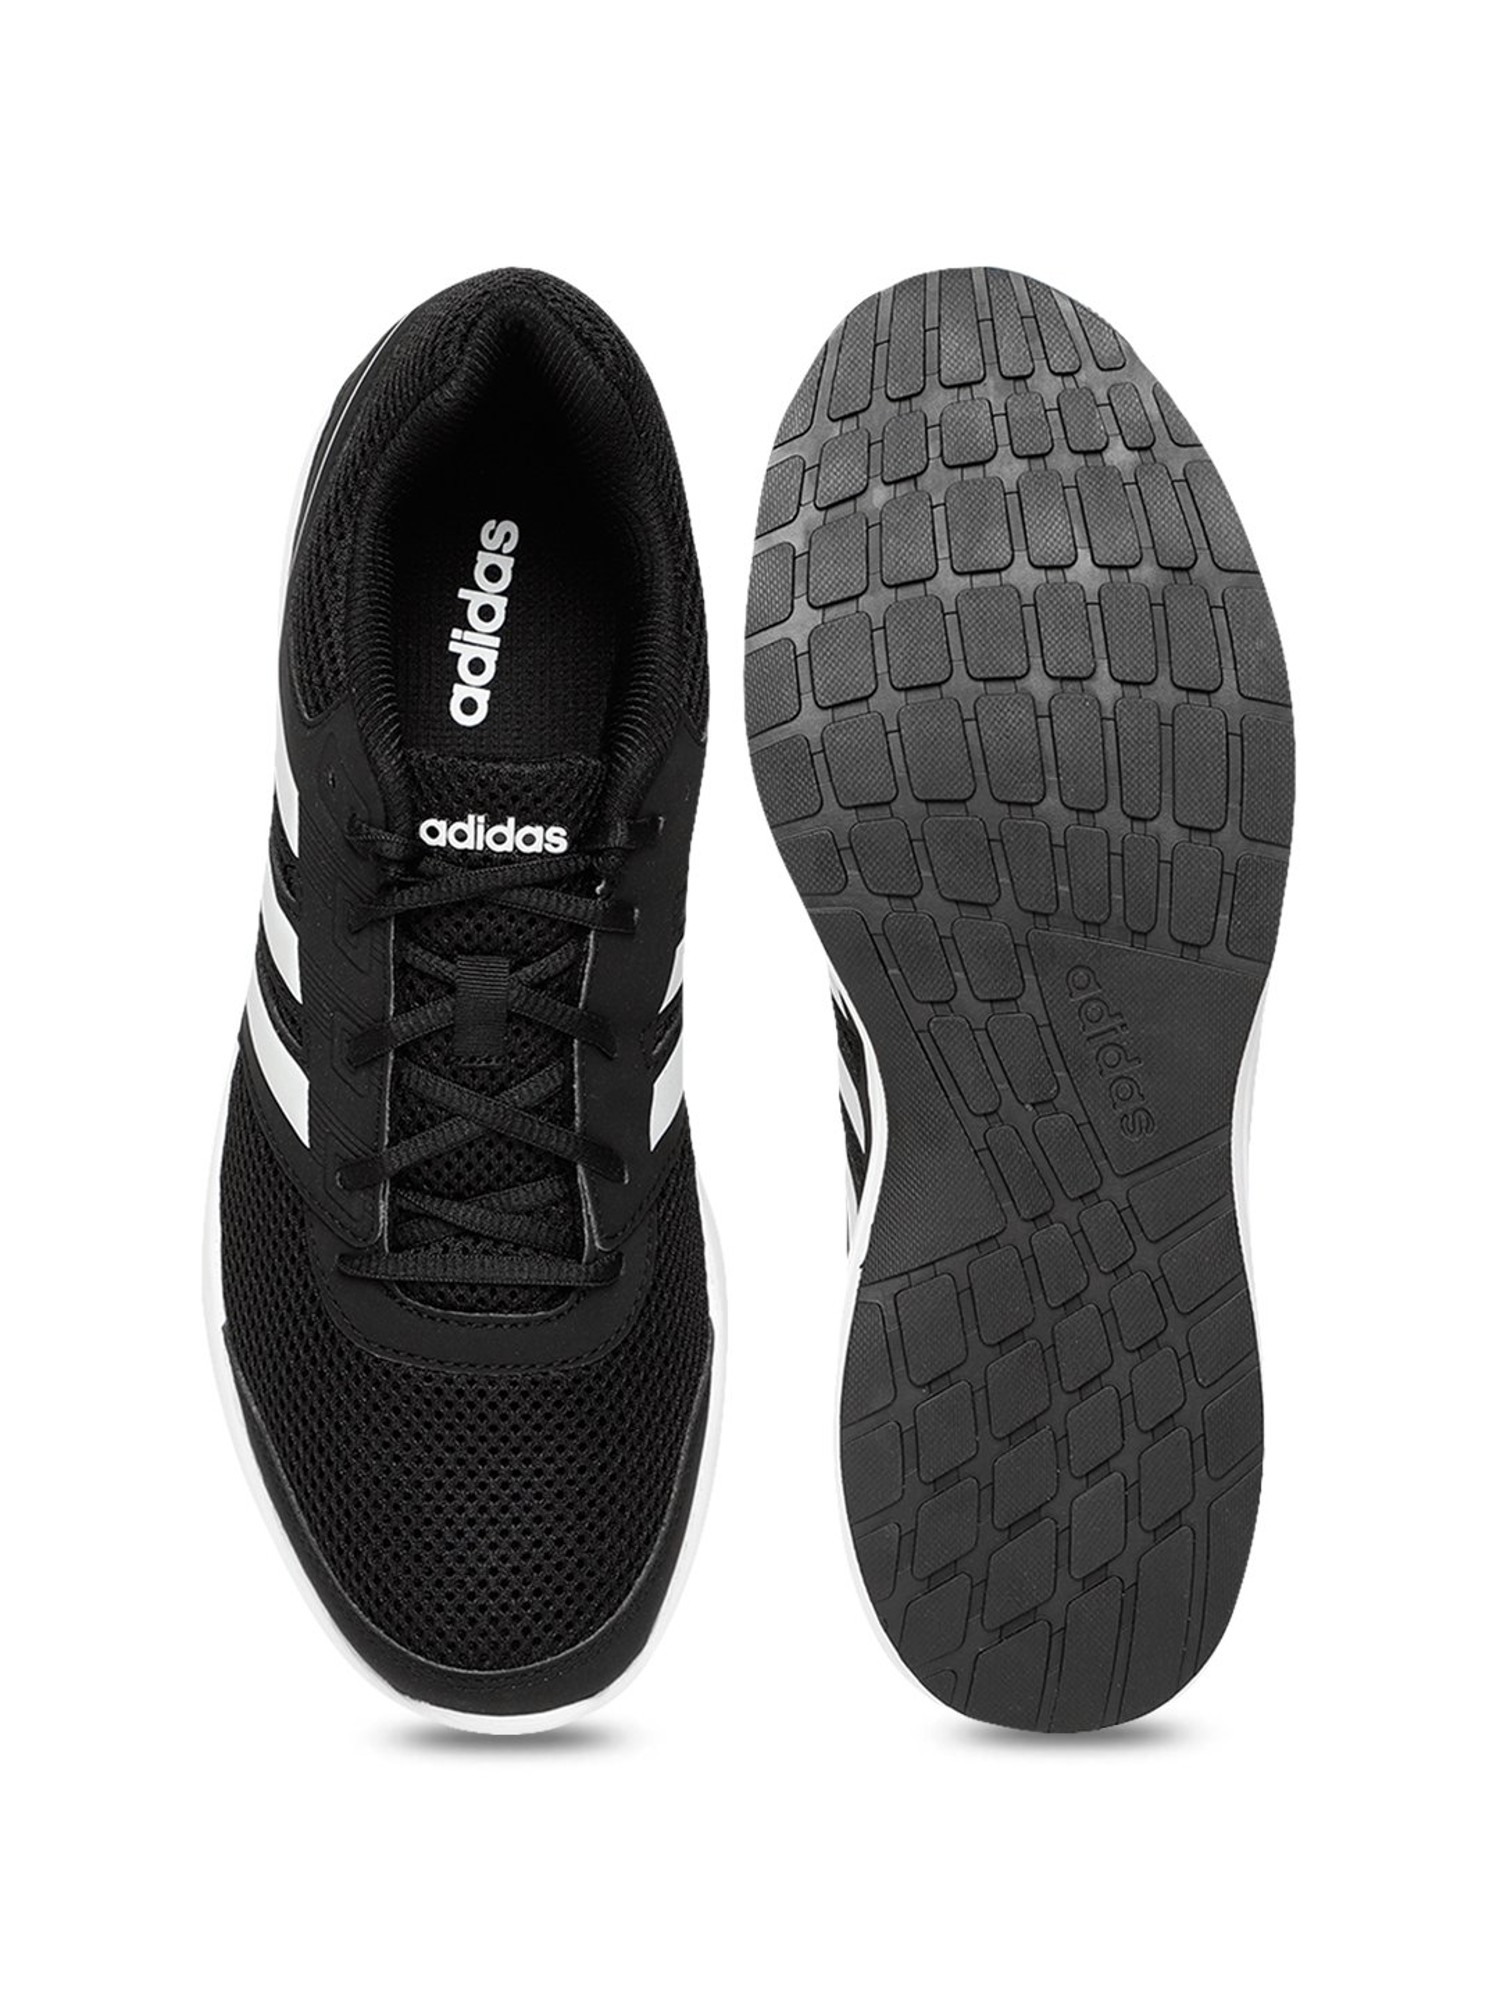 adidas hellion z black